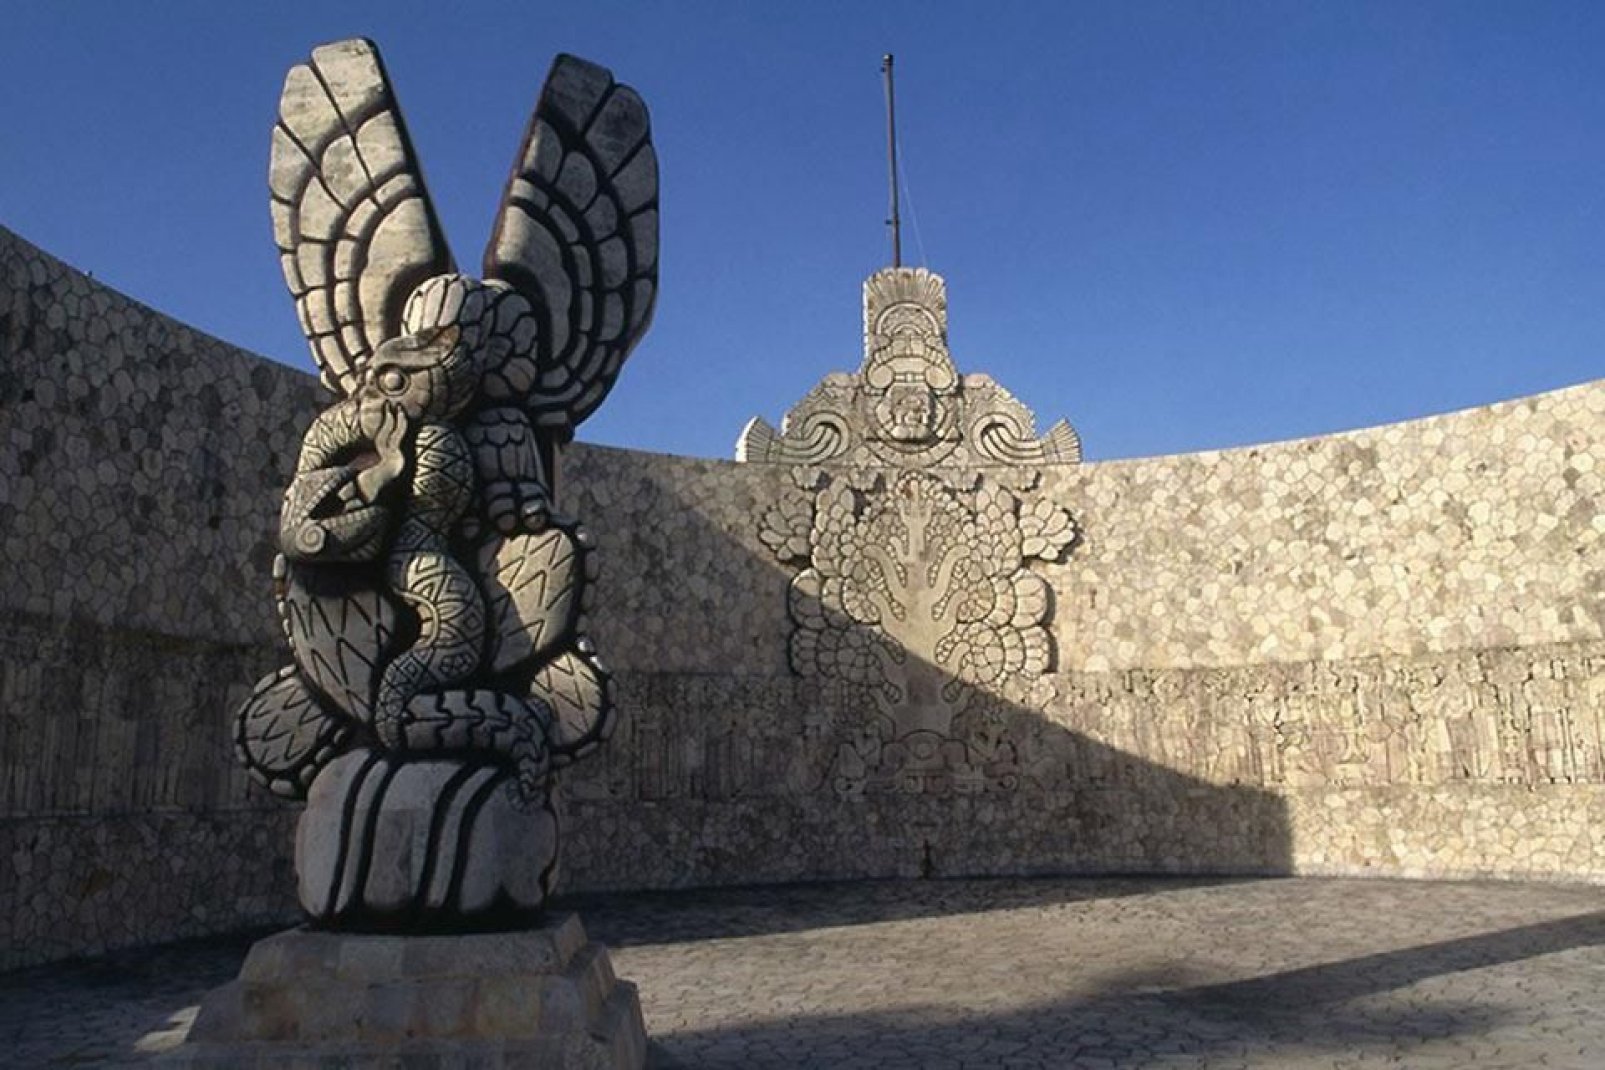 Dettaglio del monumento alla patria, composto dall'aquila e dal serpente.